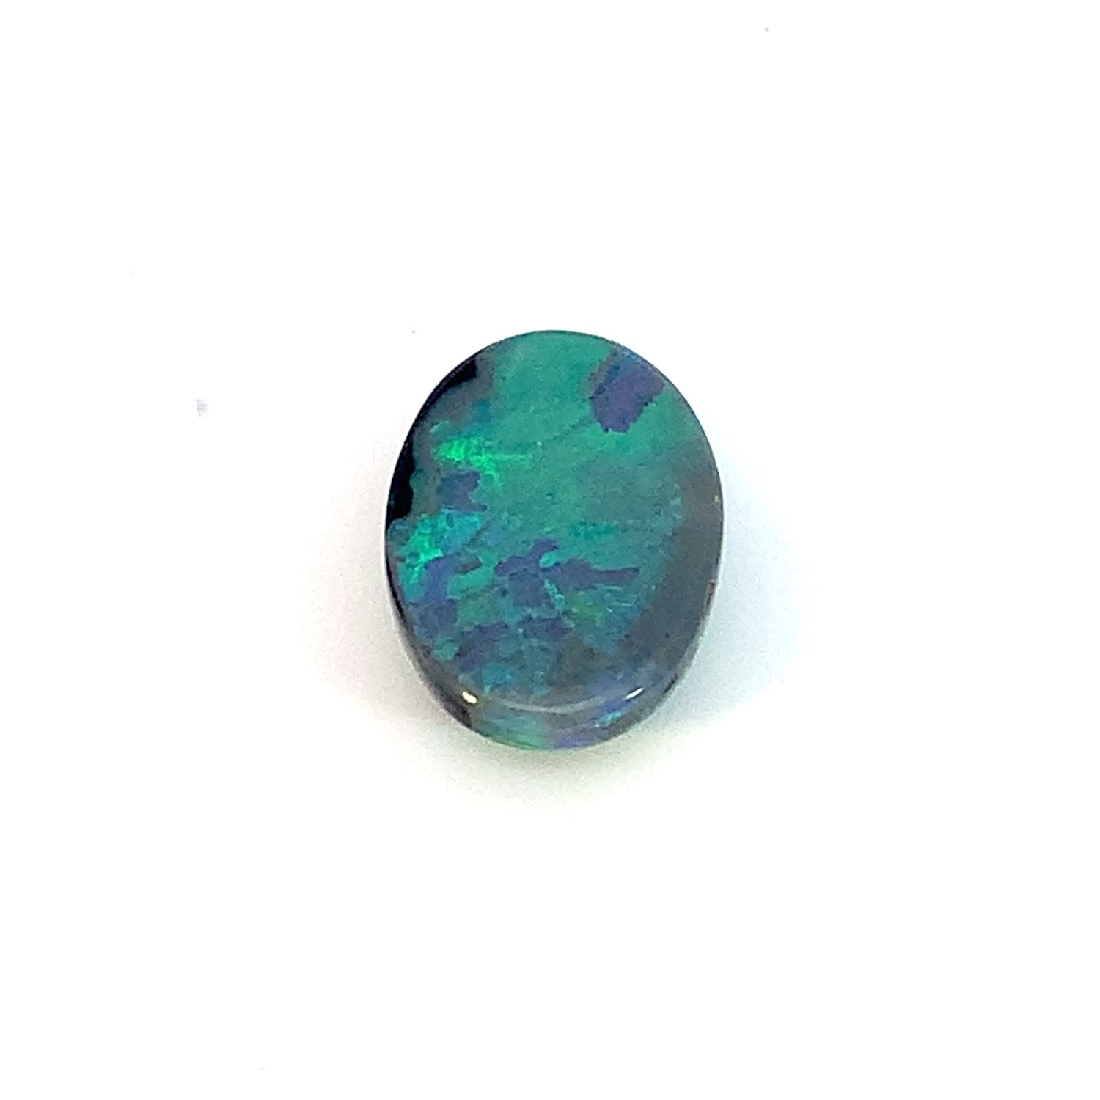 Black Opal Green Blue 3.2ct - Masterpiece Jewellery Opal & Gems Sydney Australia | Online Shop